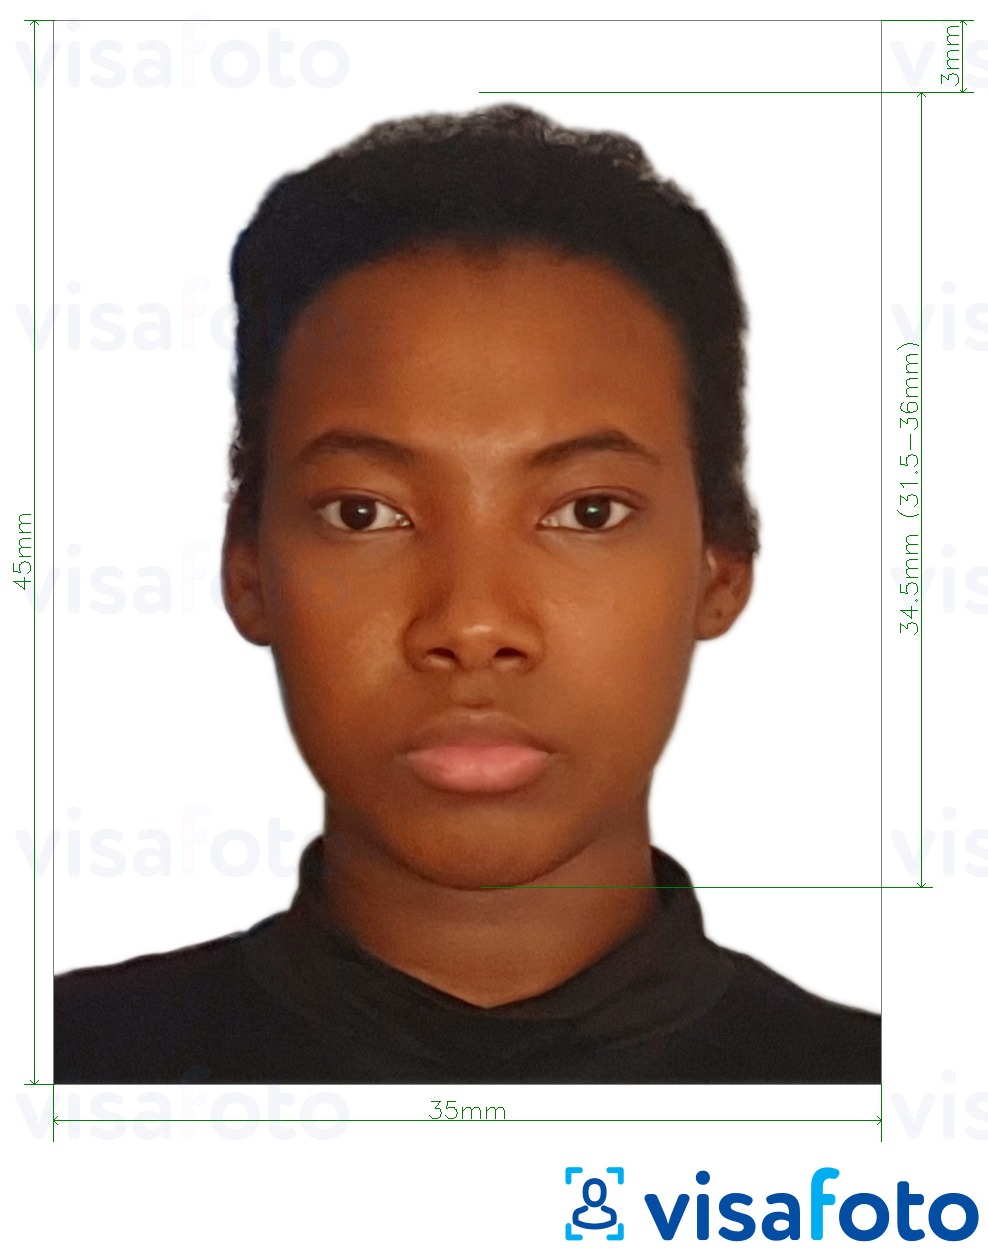 Exemple de foto per a Visa de Guinea Equatorial 35x45 mm (3.5x4.5 cm) amb la mida exacta especificada